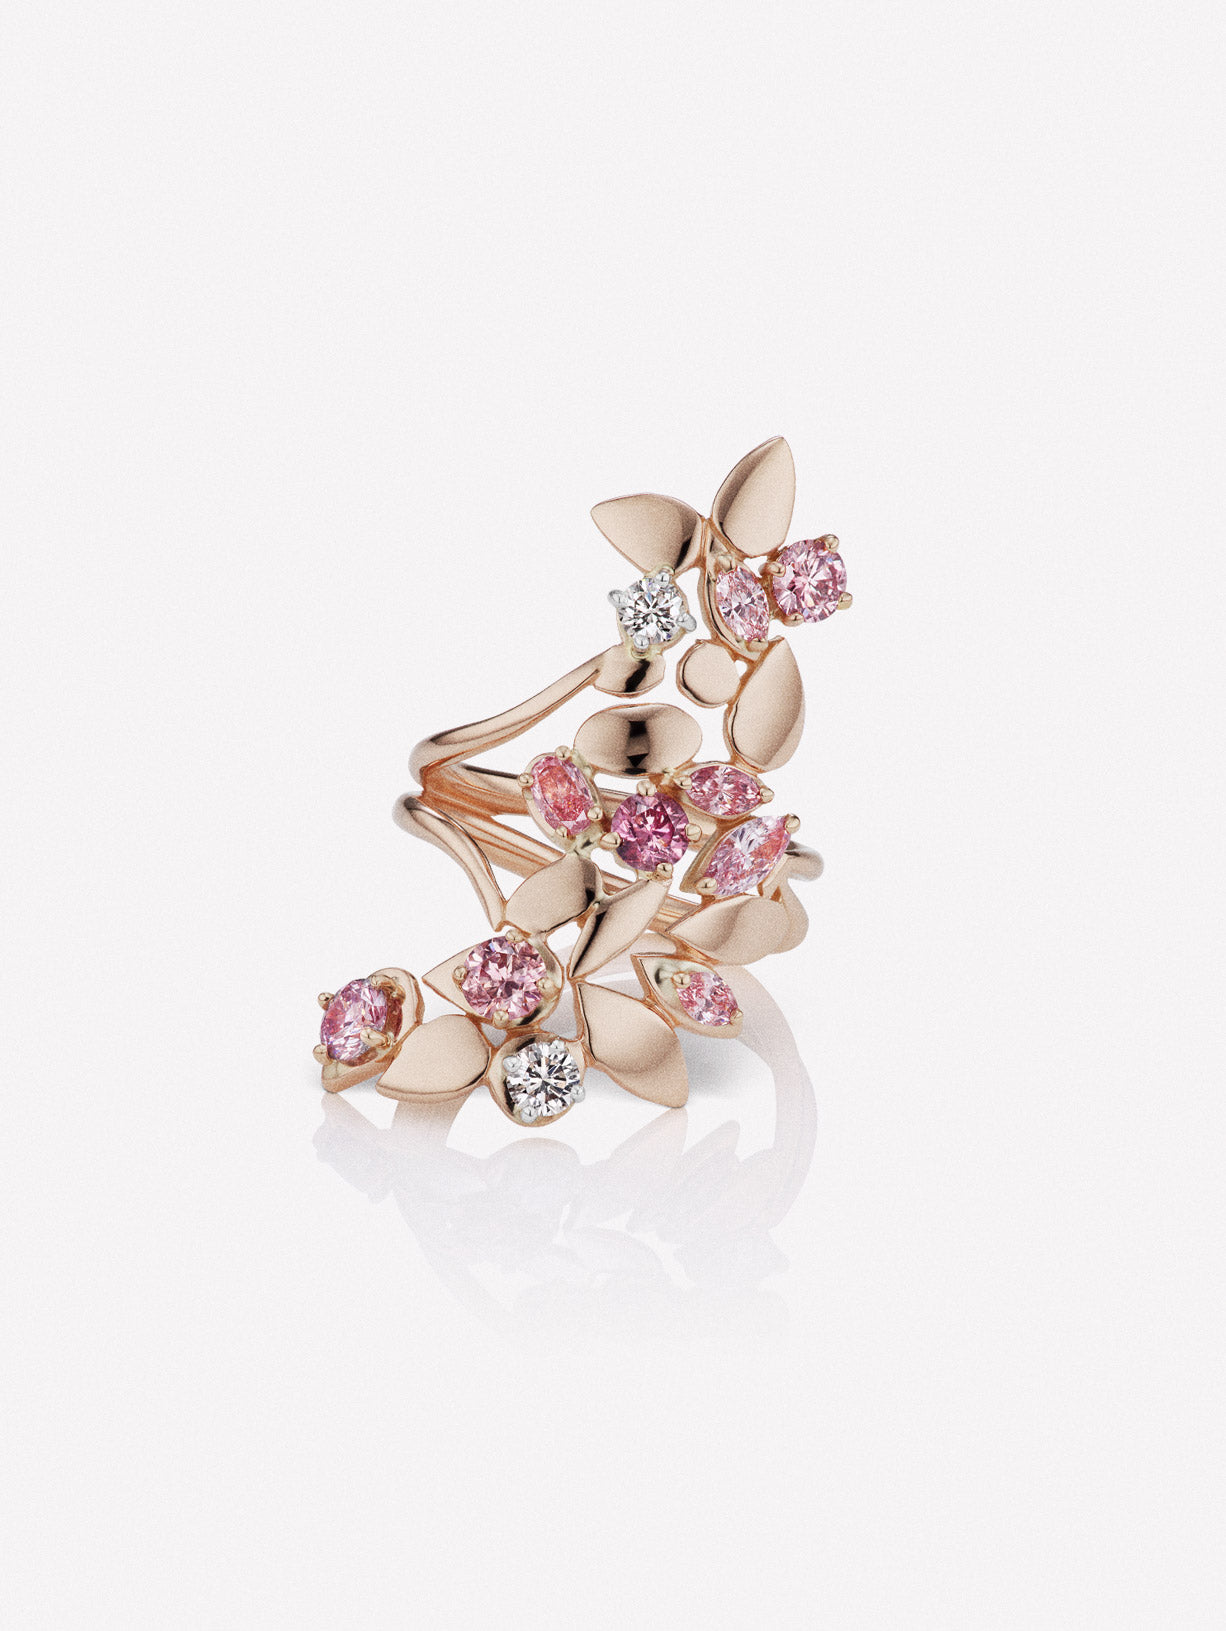 Argyle Pink™ Diamond Long Floral Ring - Pink Diamonds, J FINE - J Fine, Rings - Pink Diamond Jewelry, argyle-pink™-diamond-long-floral-ring-by-j-fine - Argyle Pink Diamonds